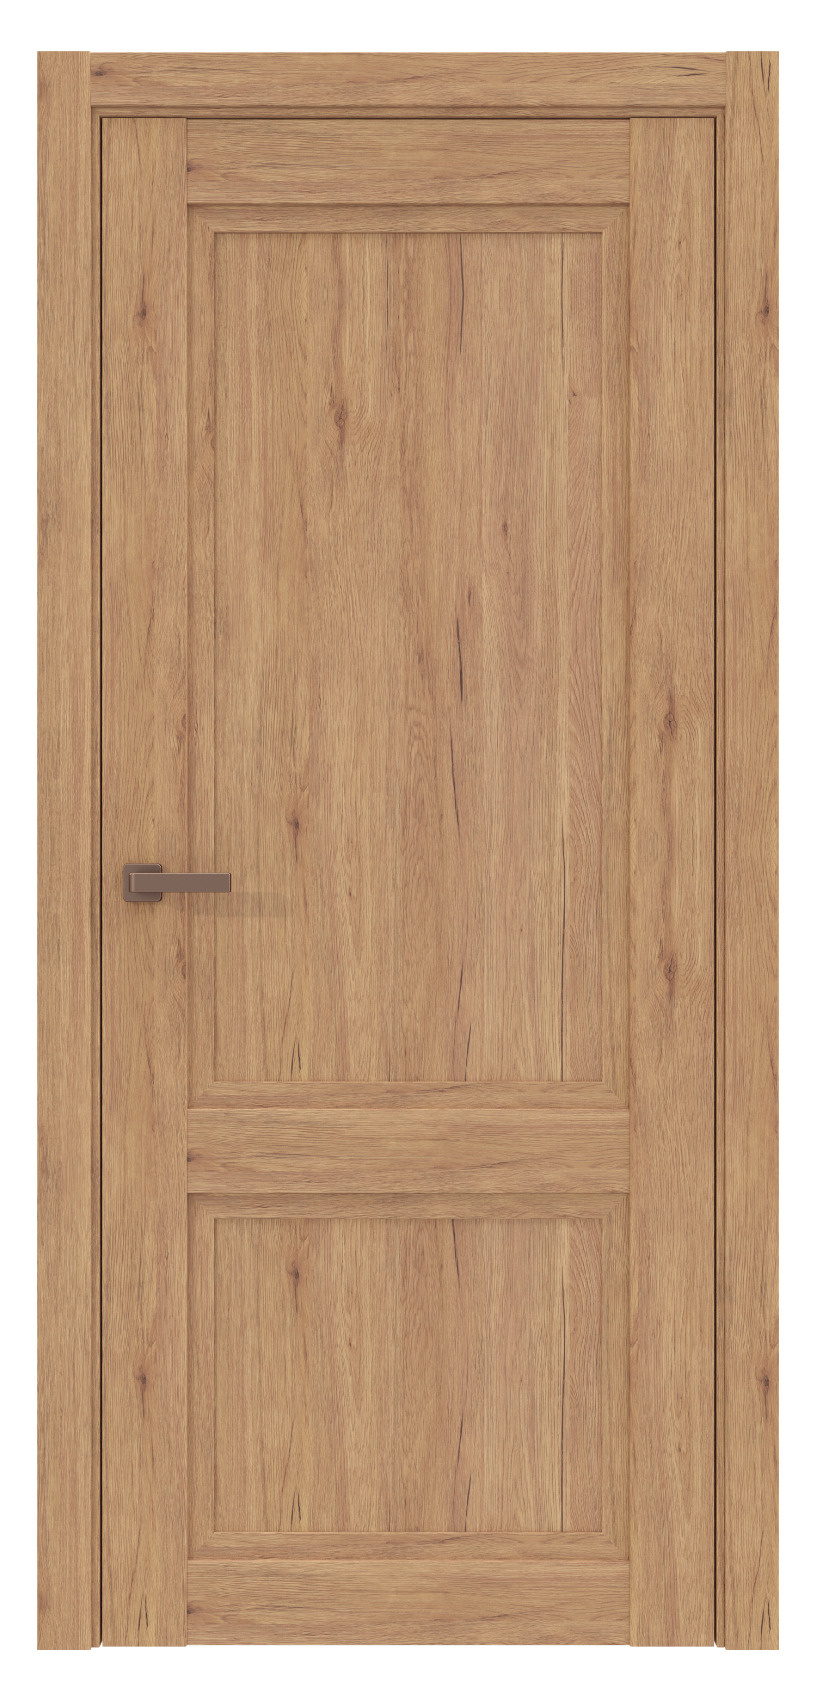 Questdoors Межкомнатная дверь QPS1, арт. 17553 - фото №1